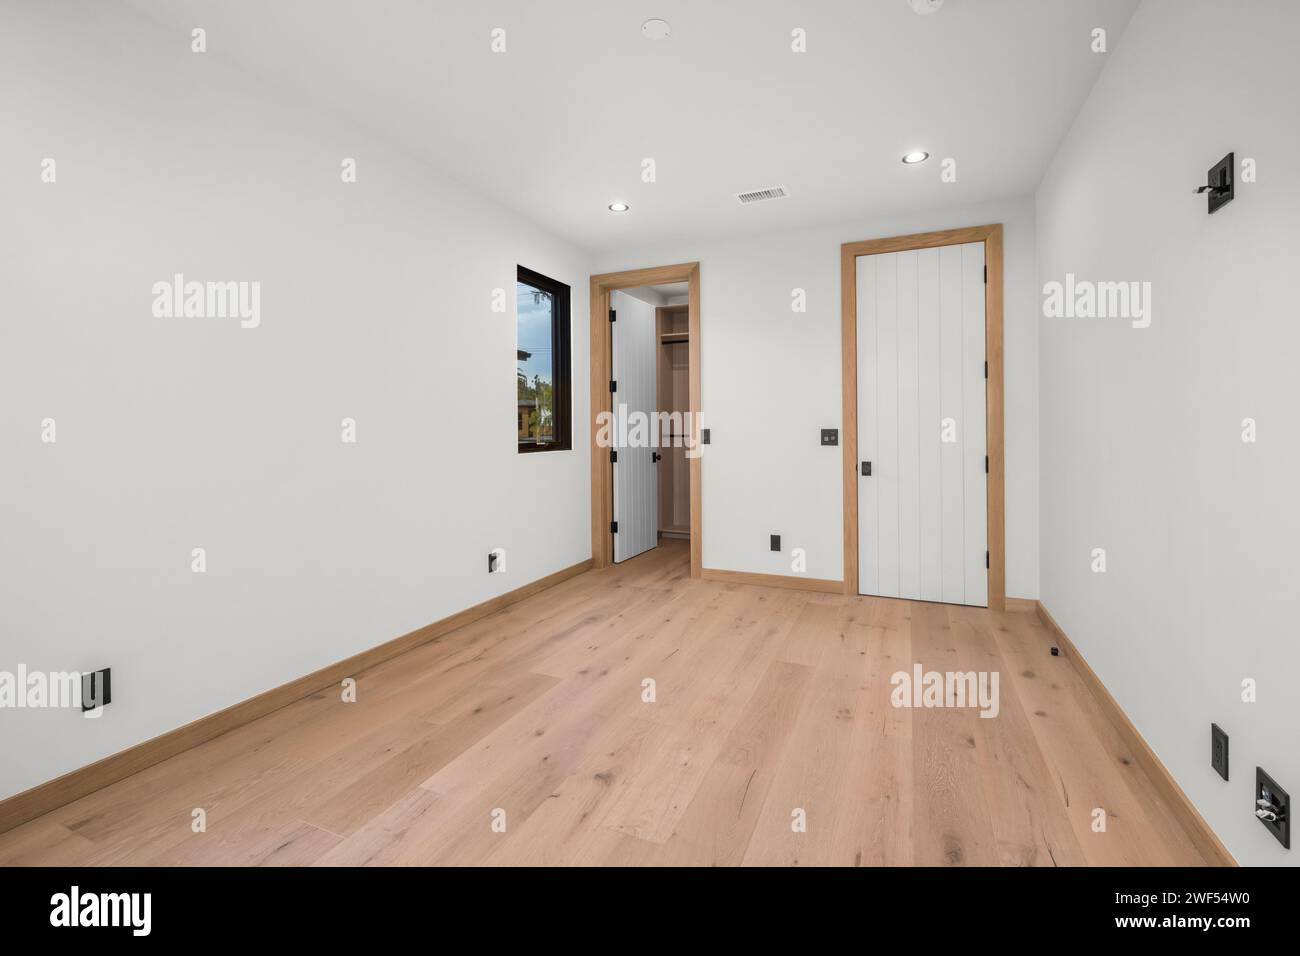 Una stanza vuota con pavimenti in legno, una porta, una finestra e persiane parzialmente chiuse Foto Stock